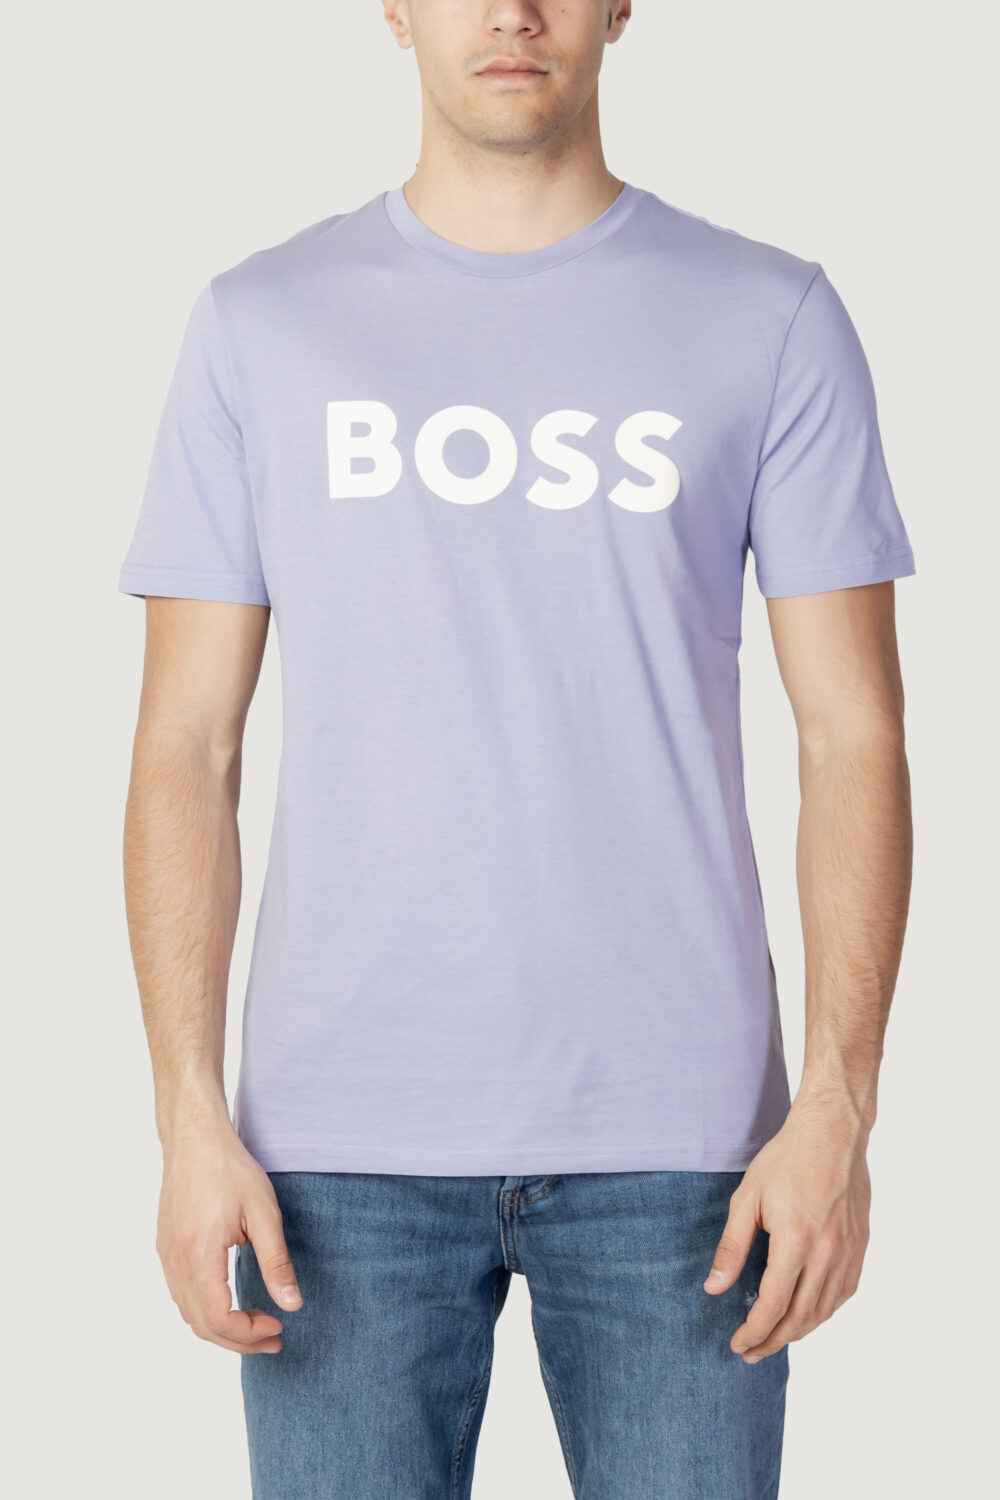 T-shirt Boss jersey thinking 1 Lilla - Foto 5